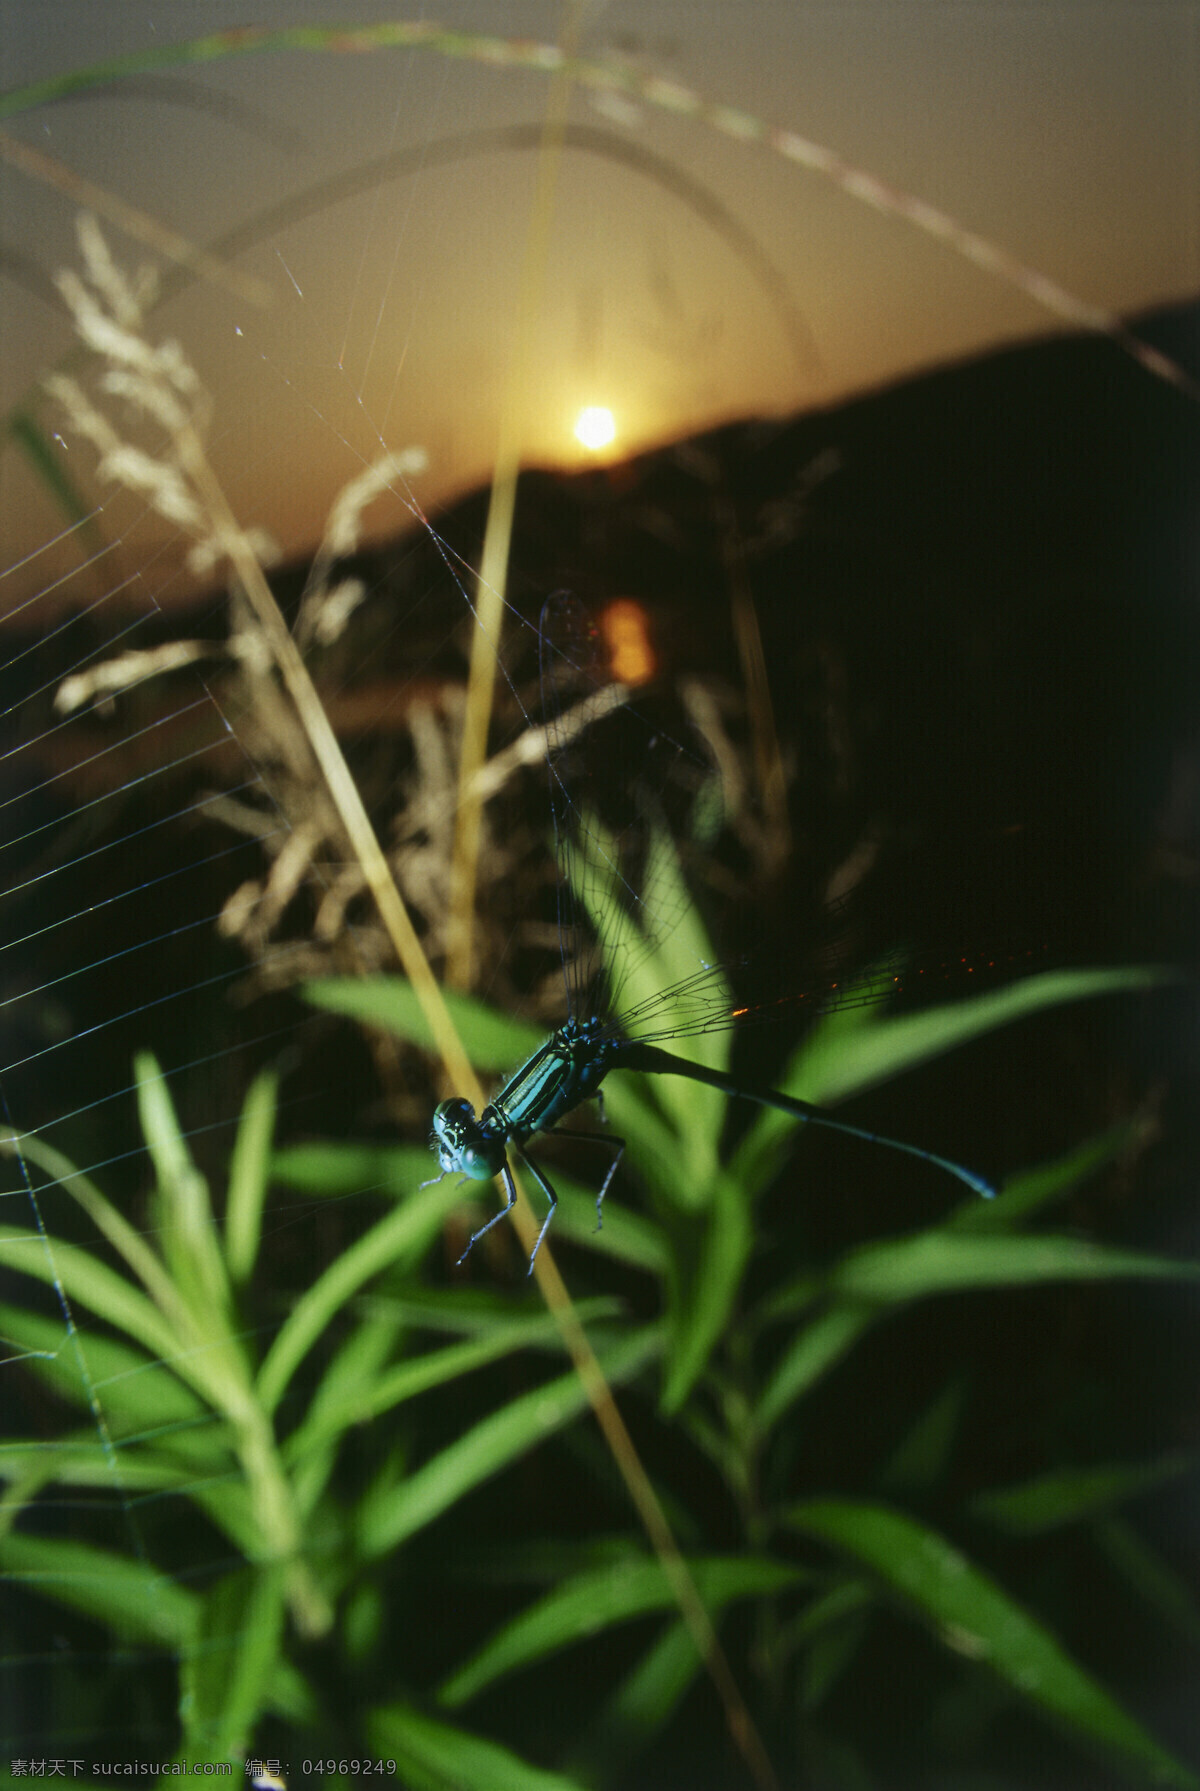 蜘蛛 网上 蜻蜓 蜻蜓摄影 动物 昆虫 自然风光 大自然 风景 风光 田野 野外 草 摄影图片 草地 树叶 叶子 山水风景 风景图片